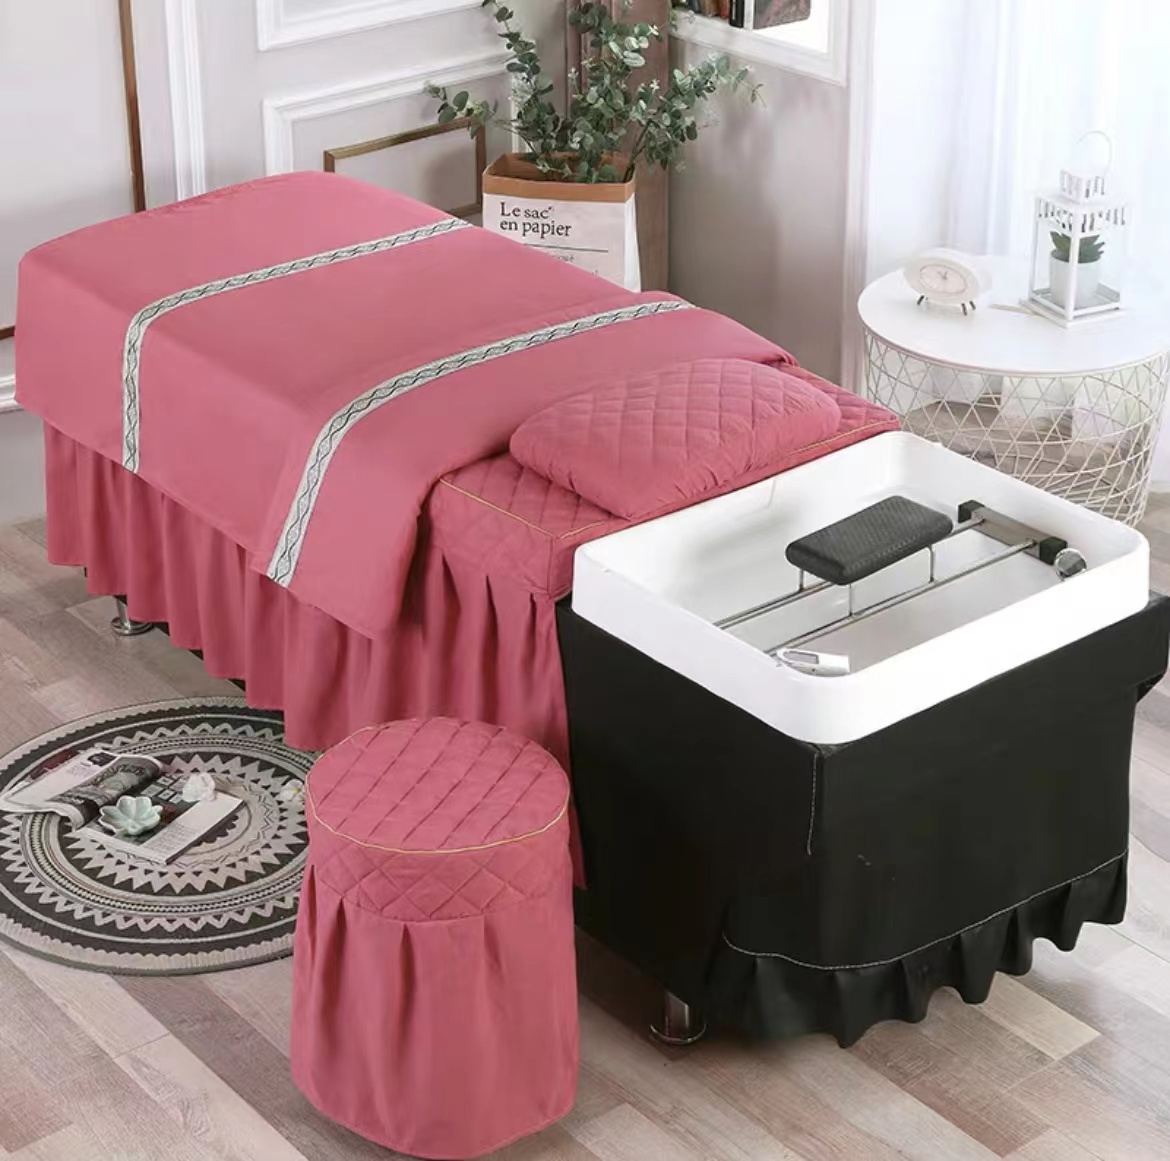 泰式洗头床头疗床美容床床罩定制